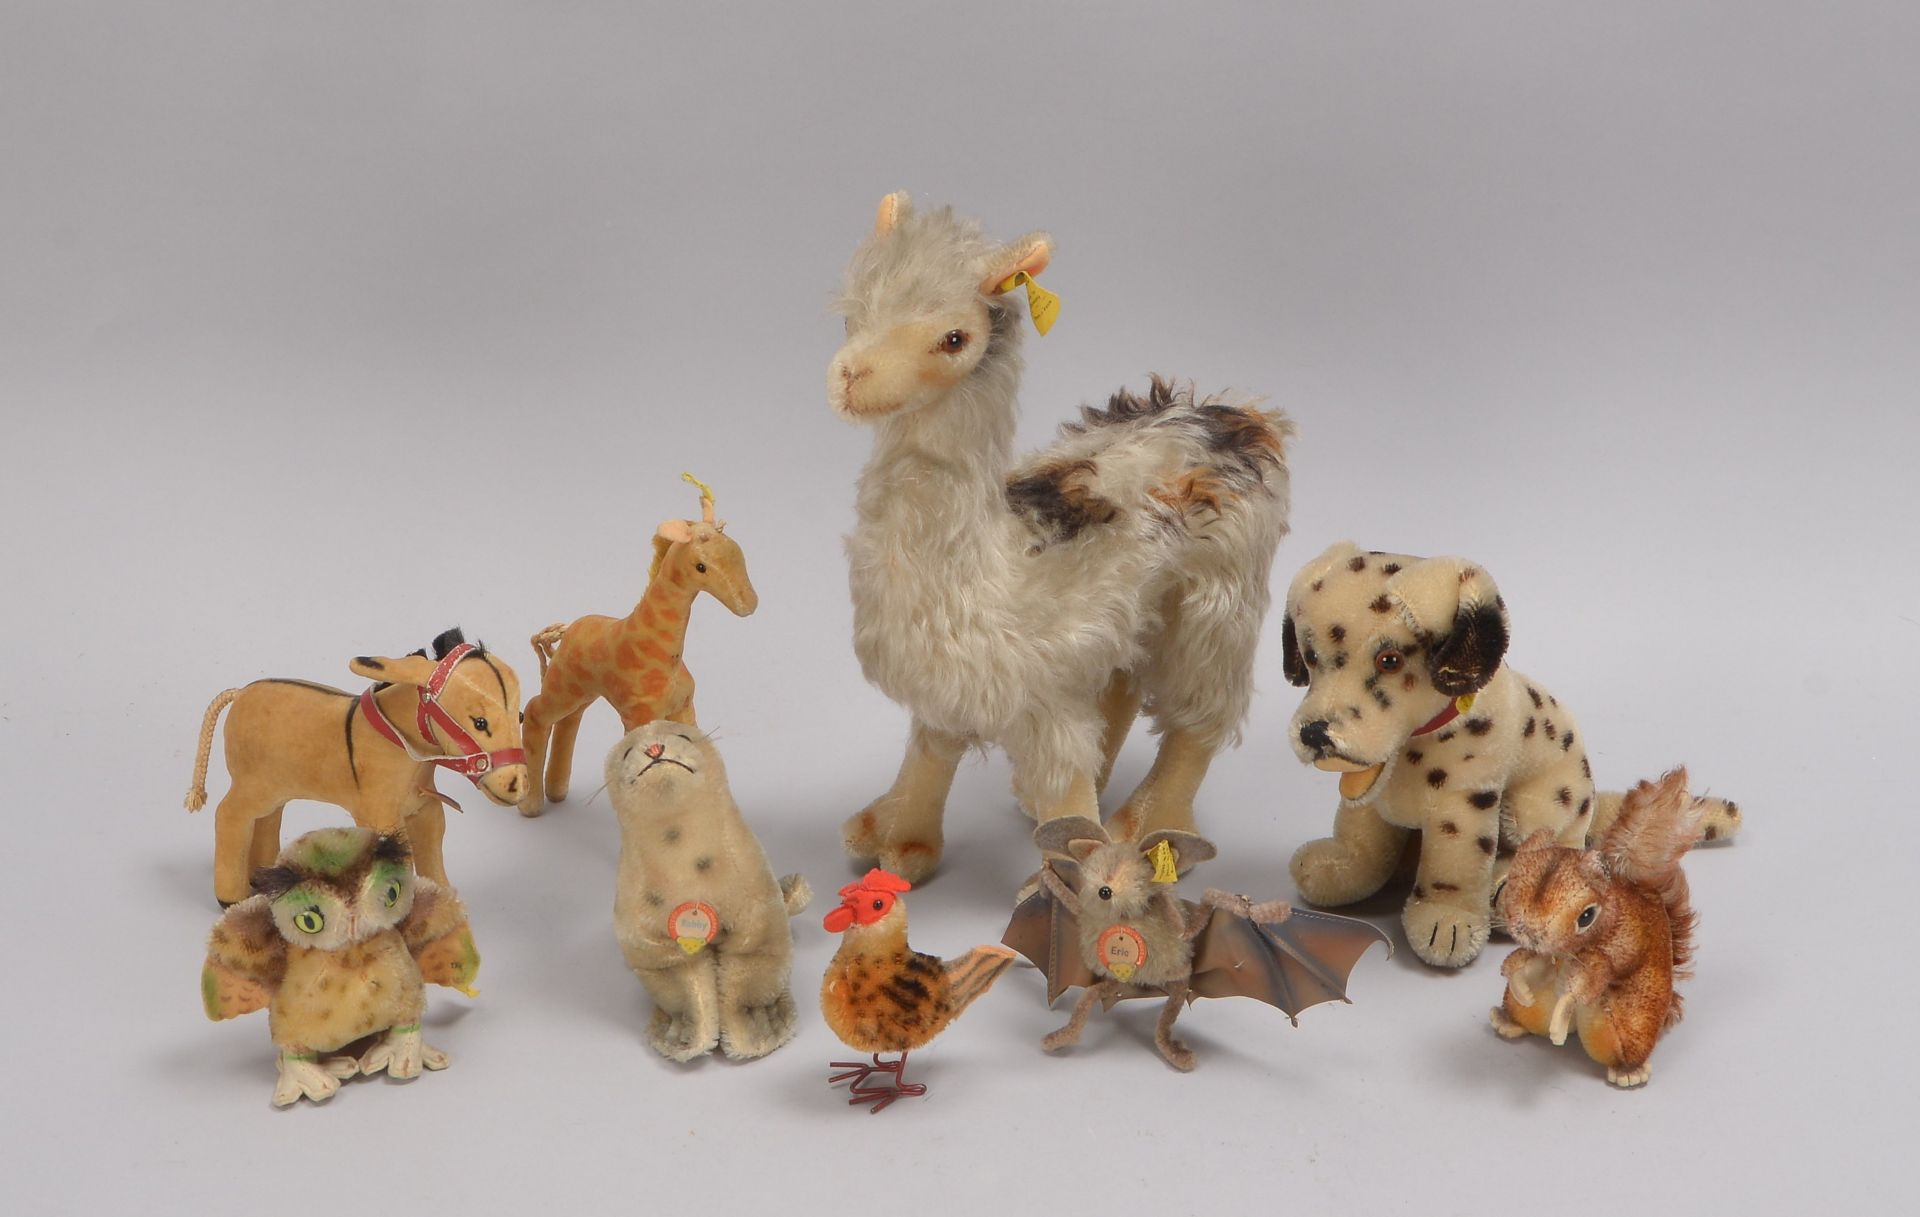 Kleine Sammlung Steiff-Sammlerfiguren, unterschiedliche Tiermotive, verschiedene Größen und Zustände - Bild 2 aus 2